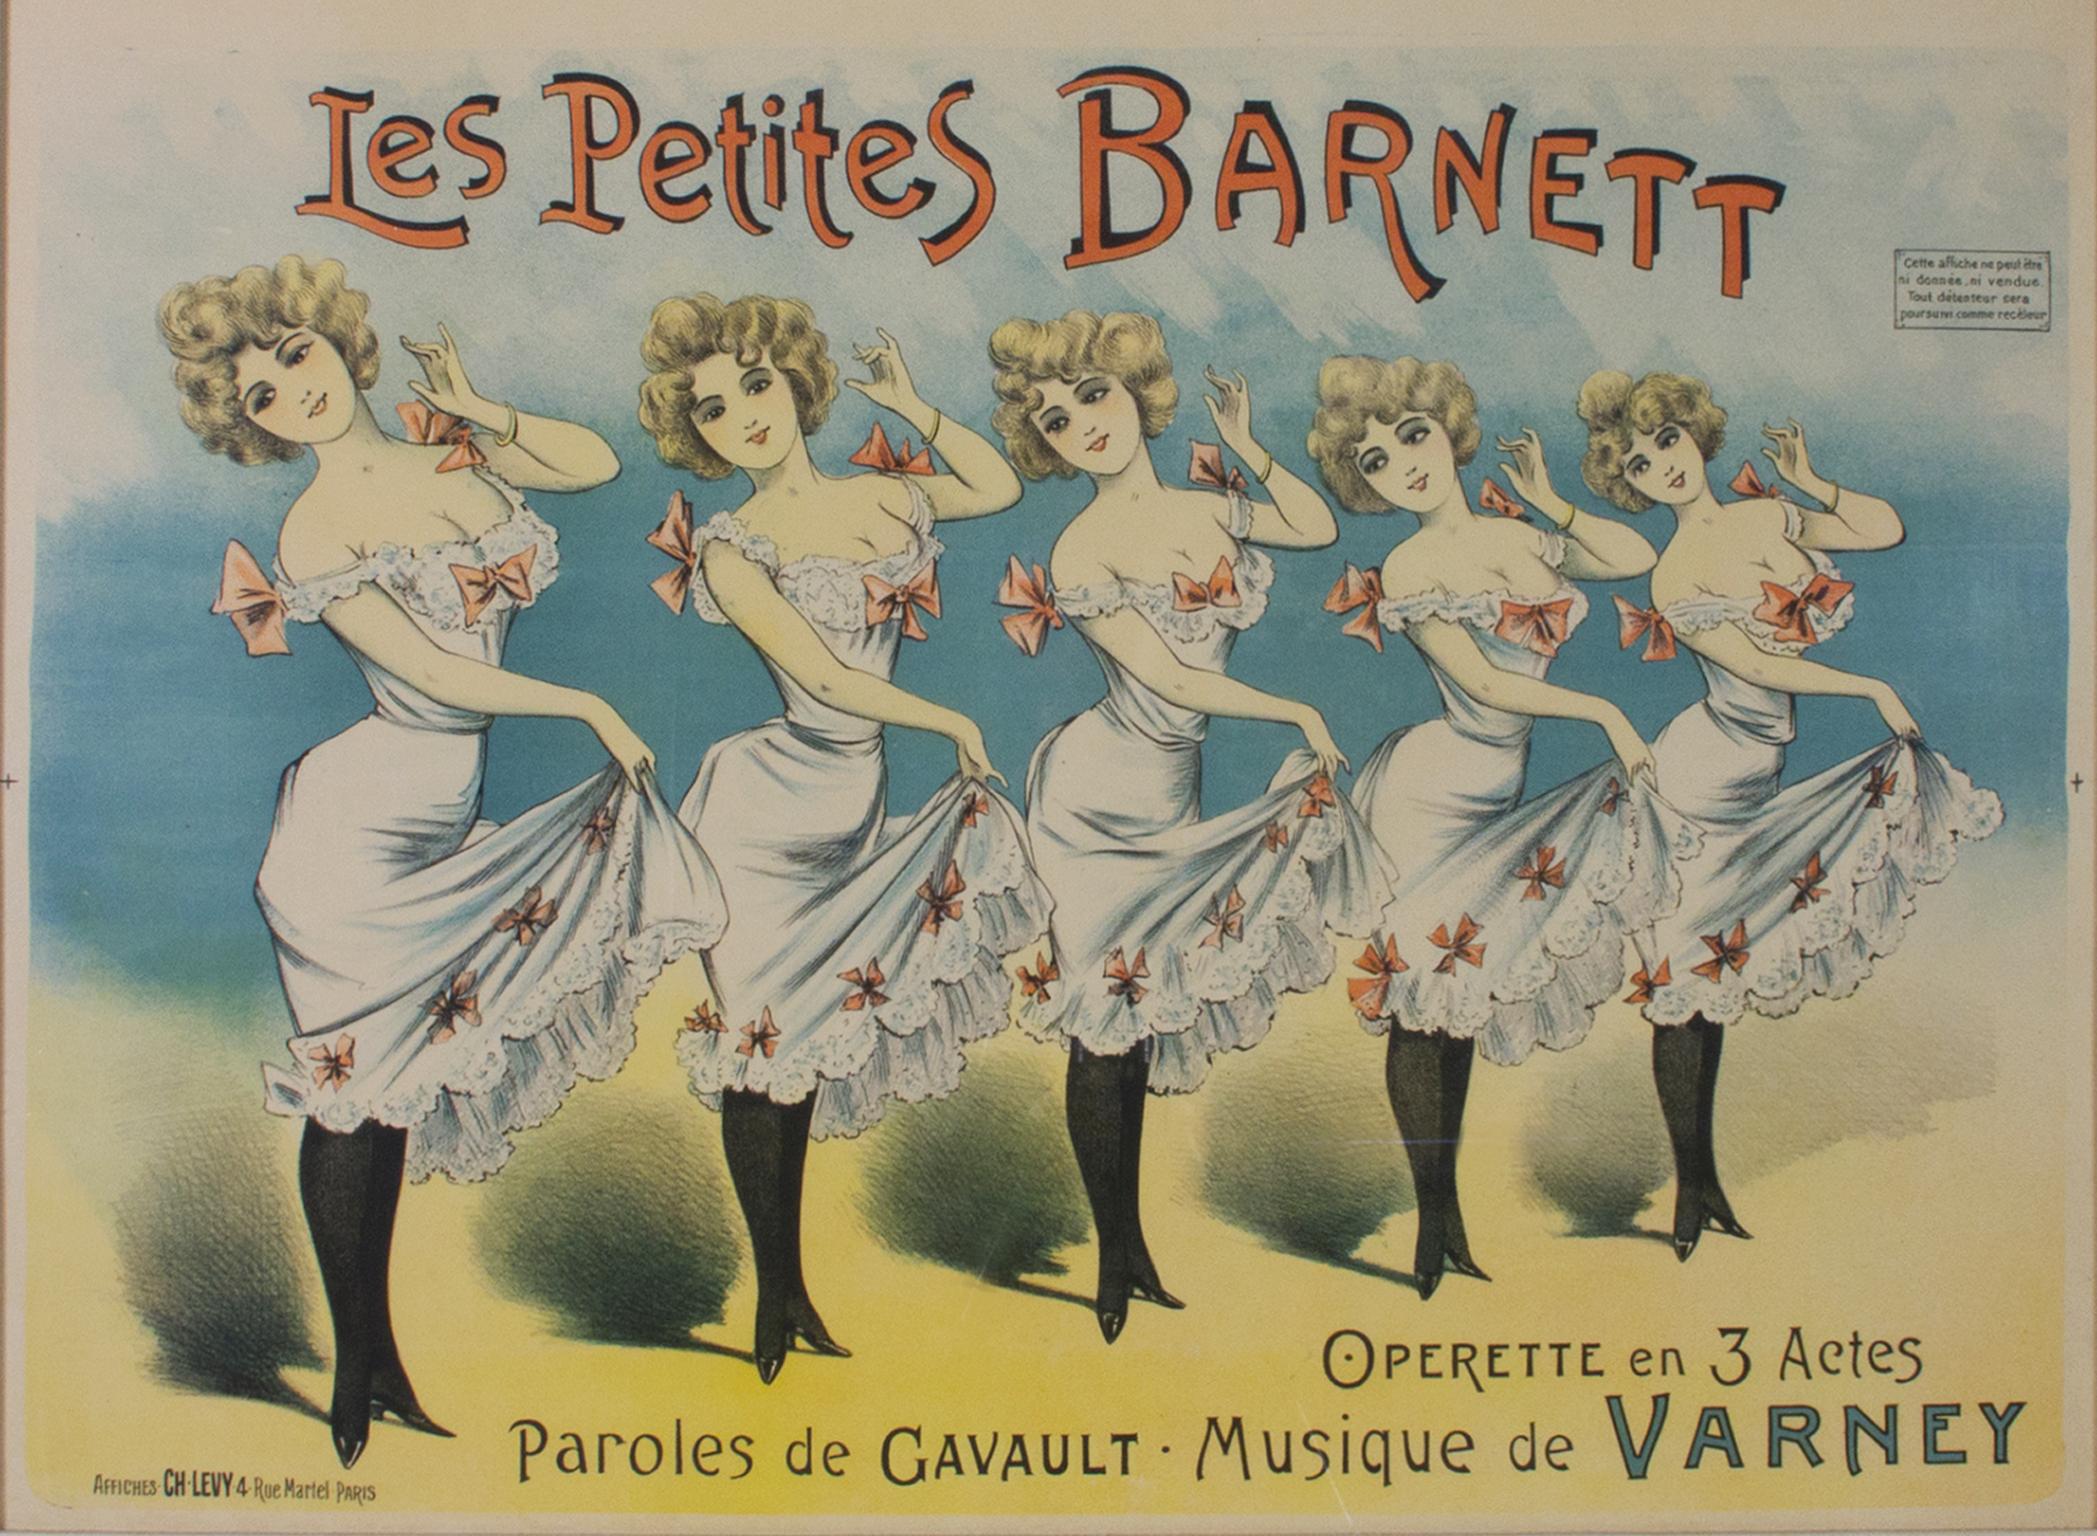 "Les Petites Barnett" ist ein Original-Farblithografie-Plakat von Charles Levy. Dieses Plakat zeigt fünf Tänzerinnen in passenden Kleidern und wirbt für eine Operette. 

23" x 30" Kunst
29 3/8" x 37 3/8" Rahmen

Charles Levy war um die